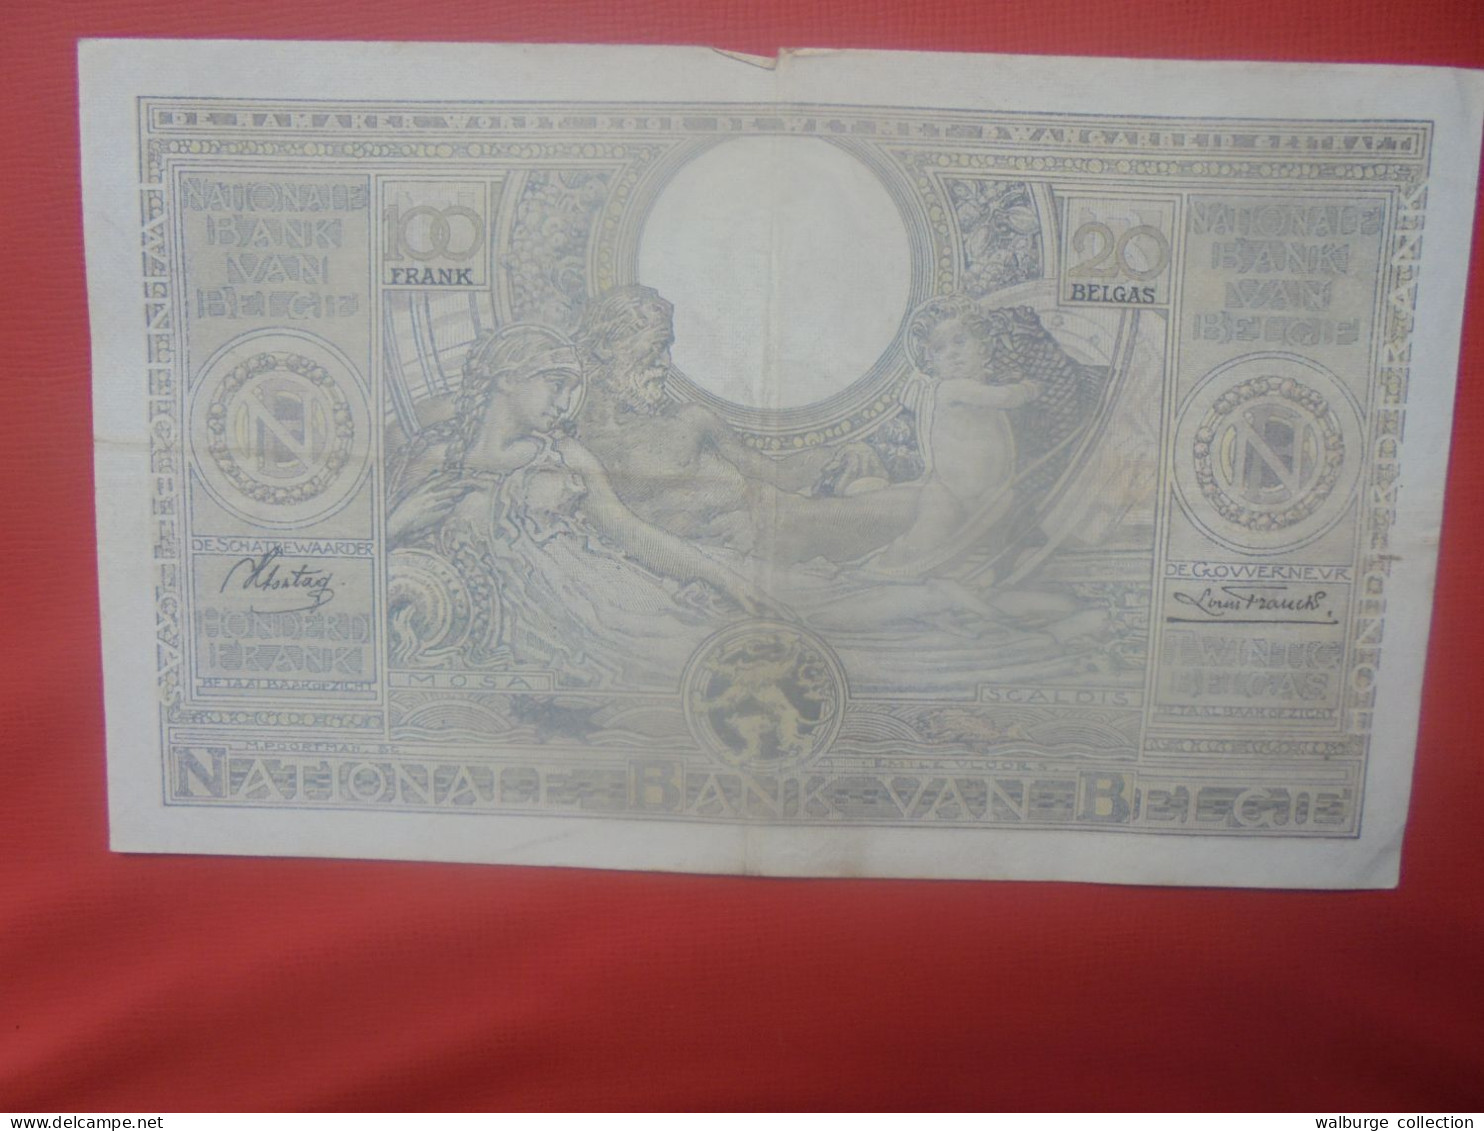 BELGIQUE 100 Francs 4-12-36 Circuler (B.18) - 100 Francos & 100 Francos-20 Belgas